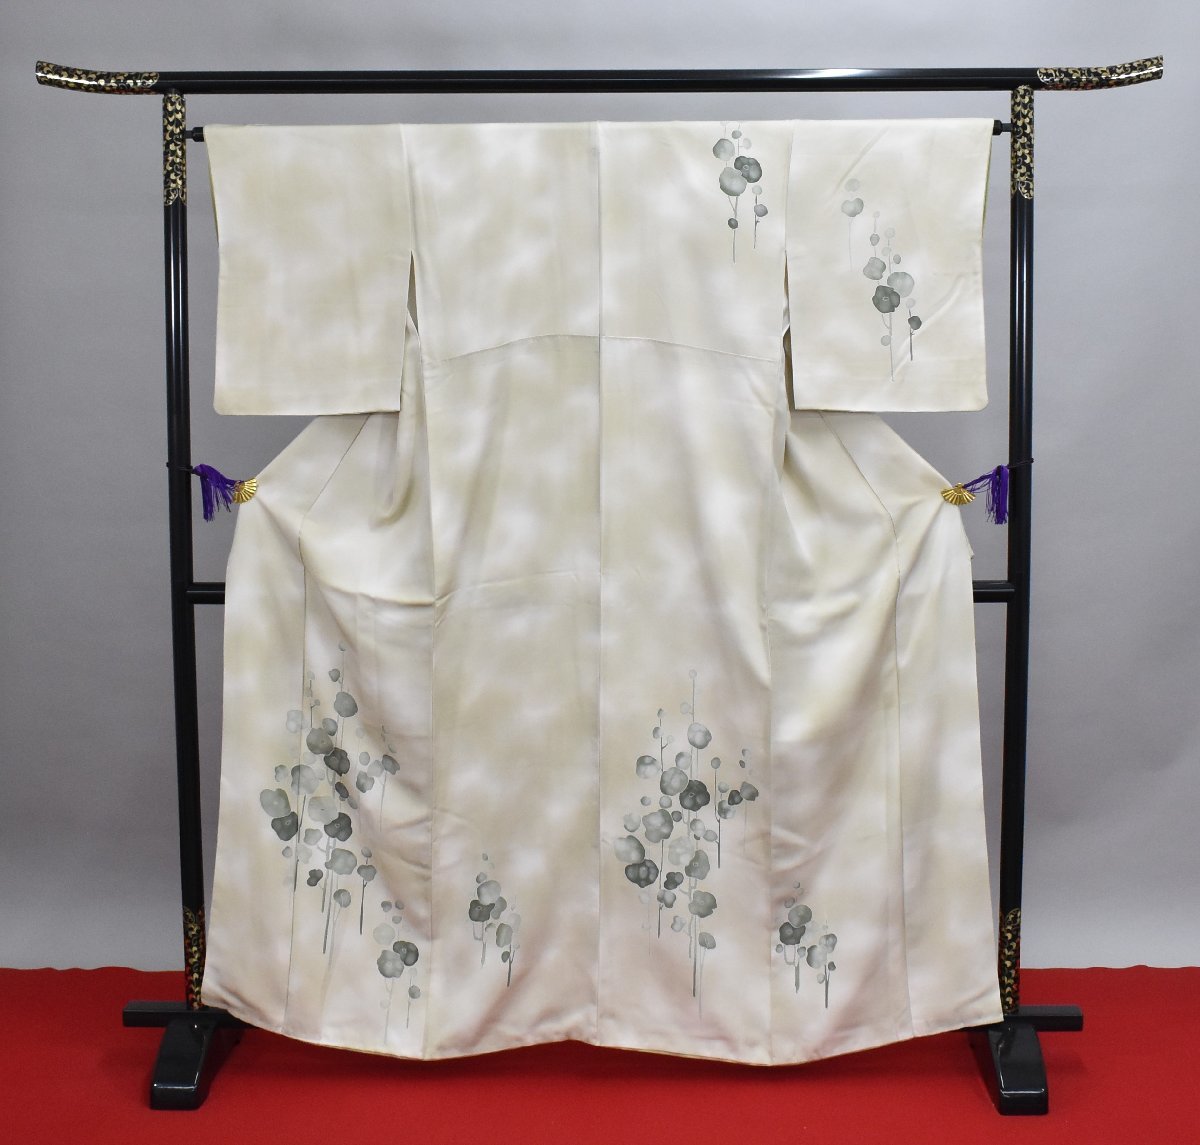 Kimono 0045- 2022 September